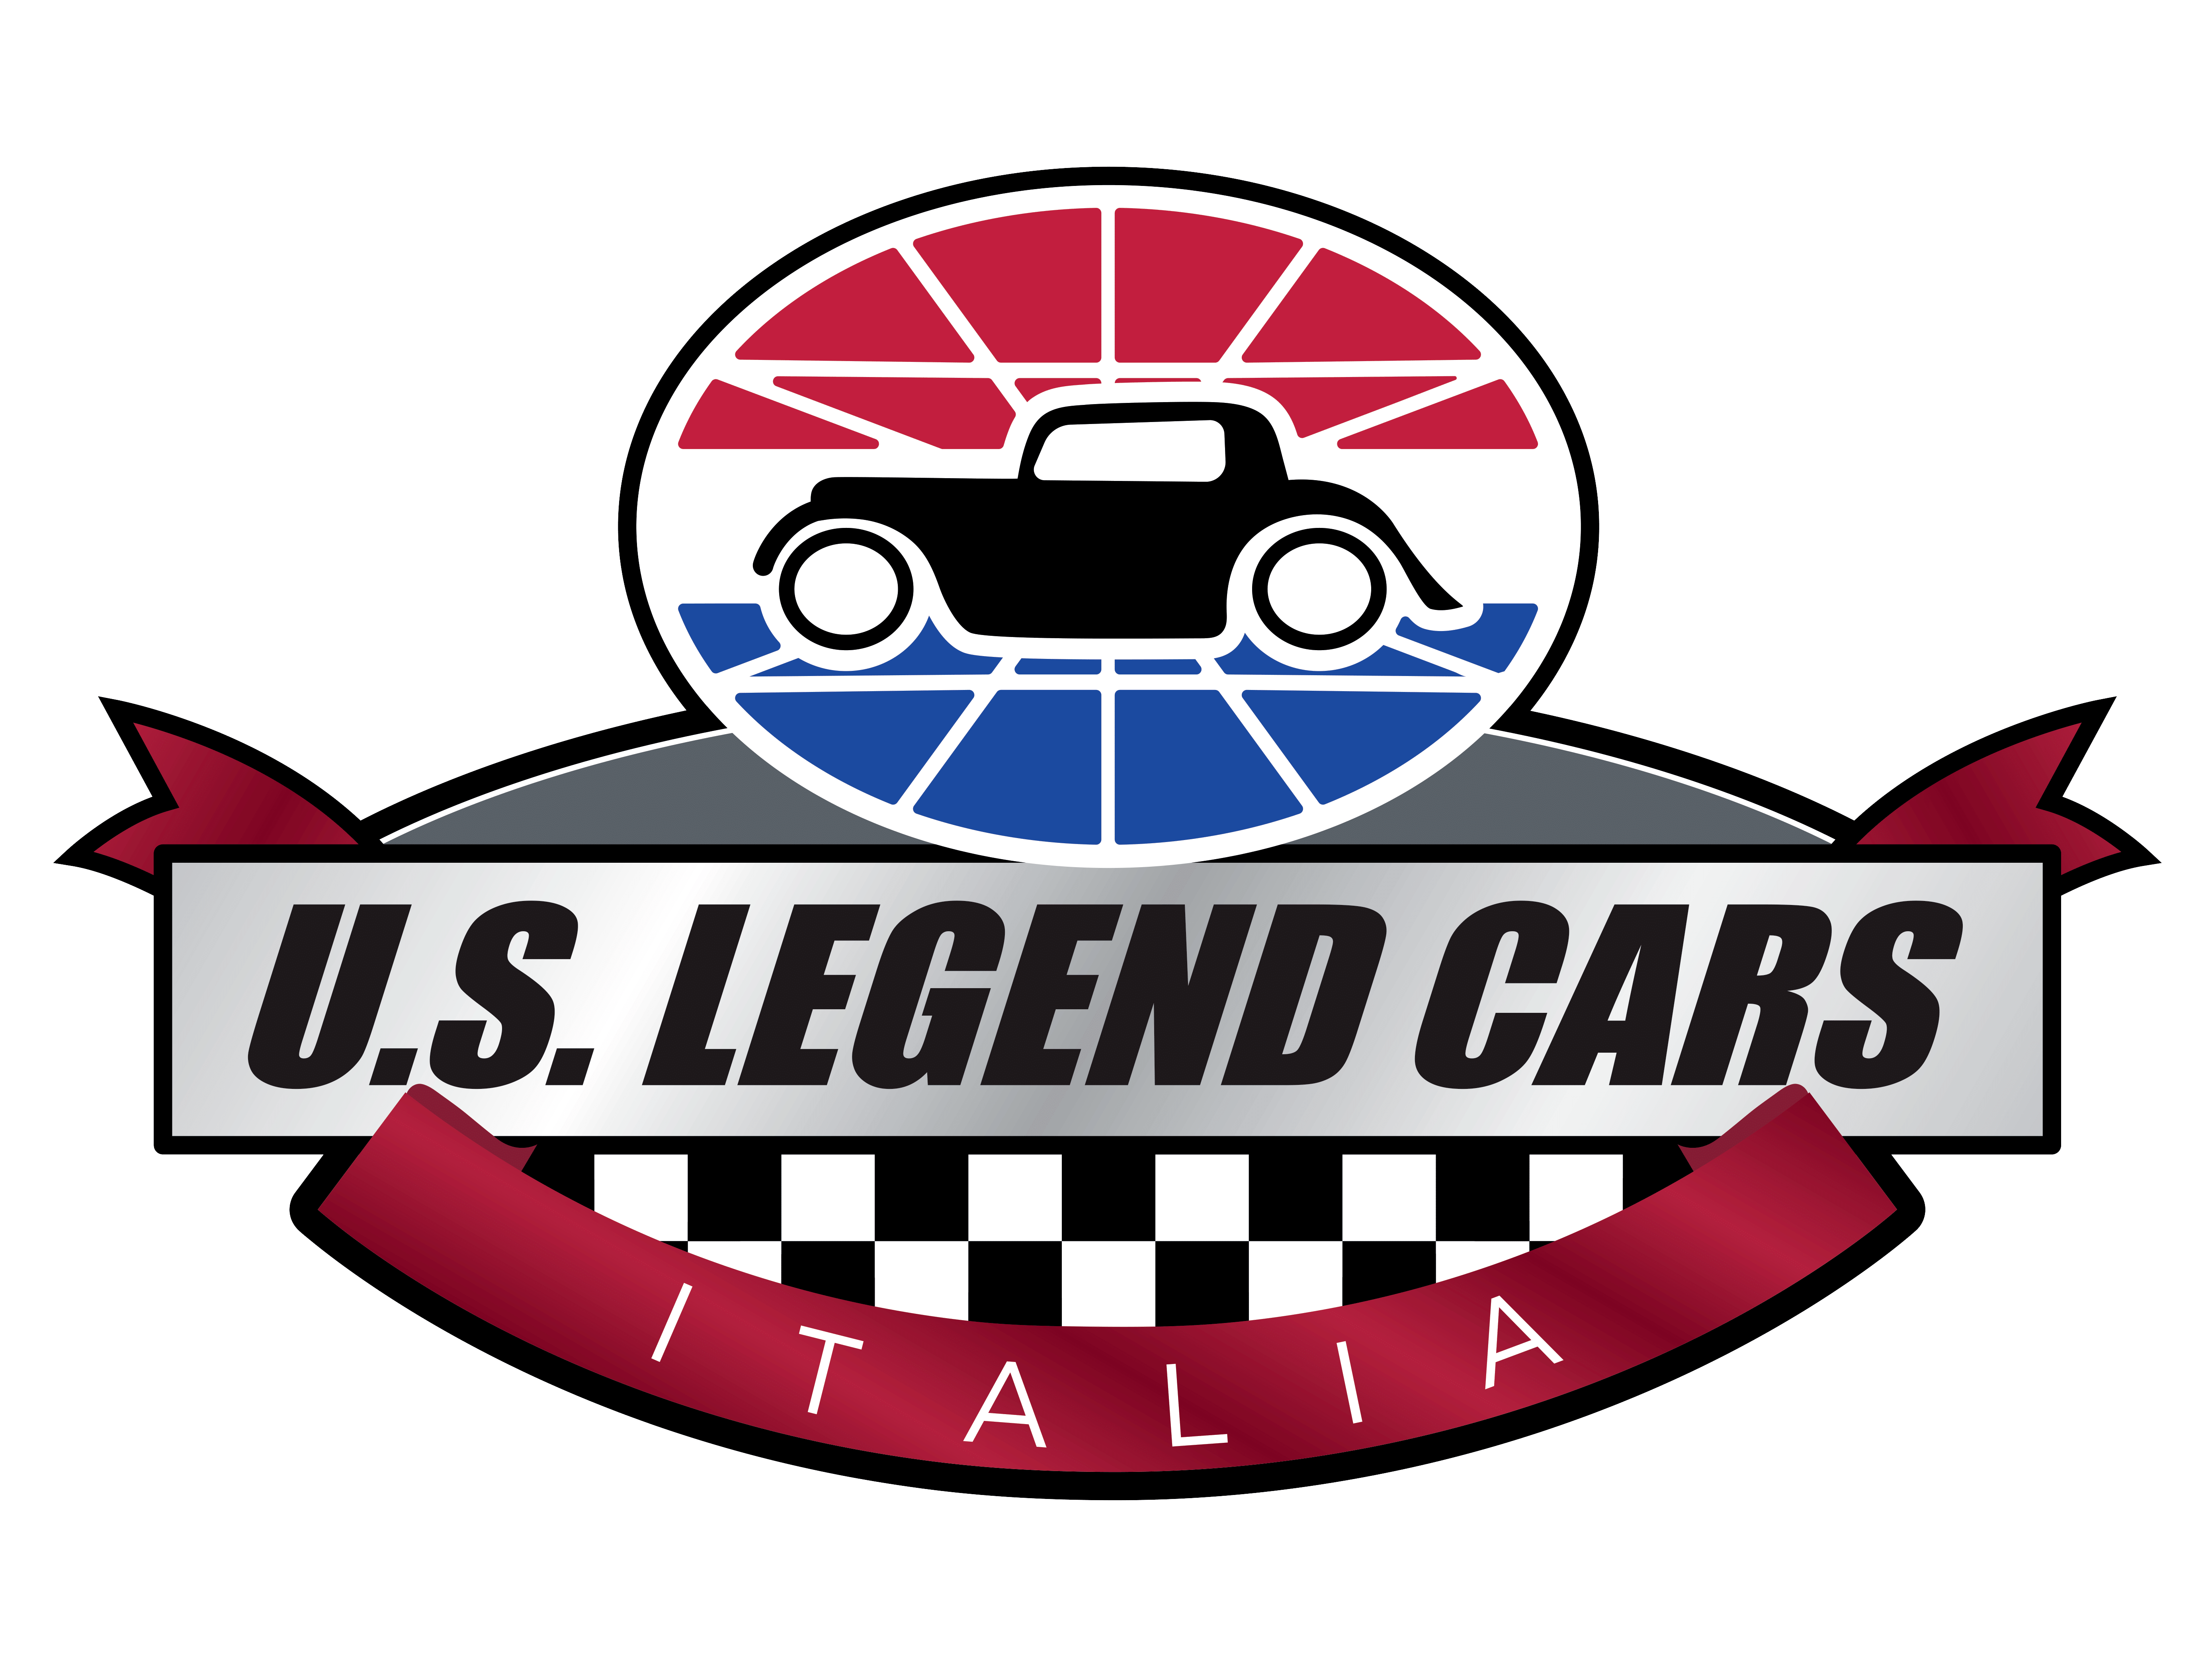 Legends Cars Italia